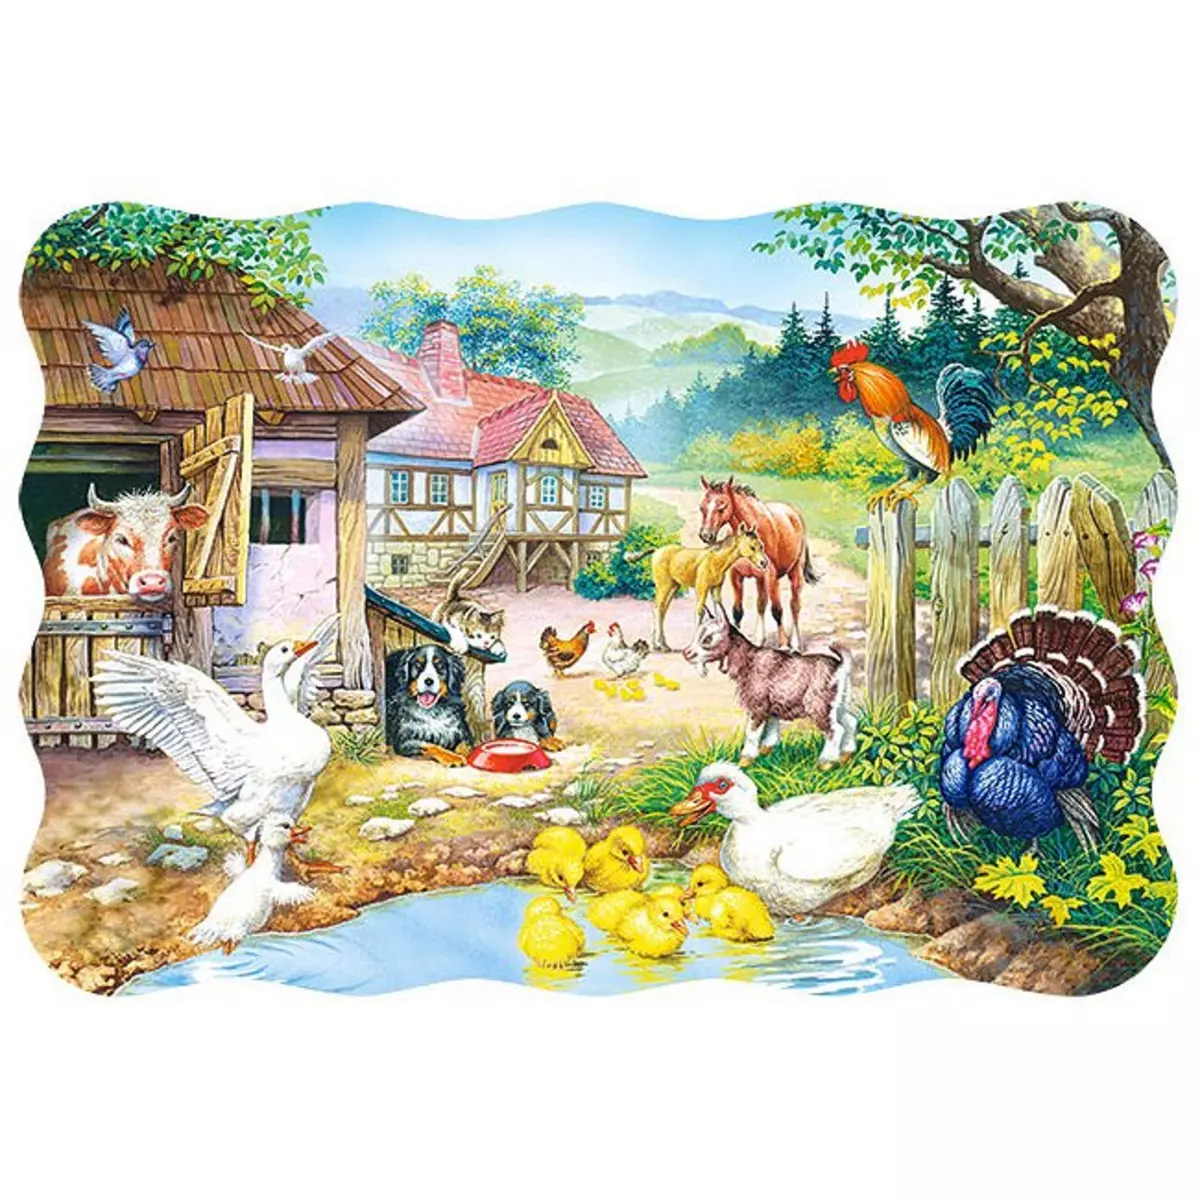 Castorland Puzzle 30 pièces : Animaux de la ferme